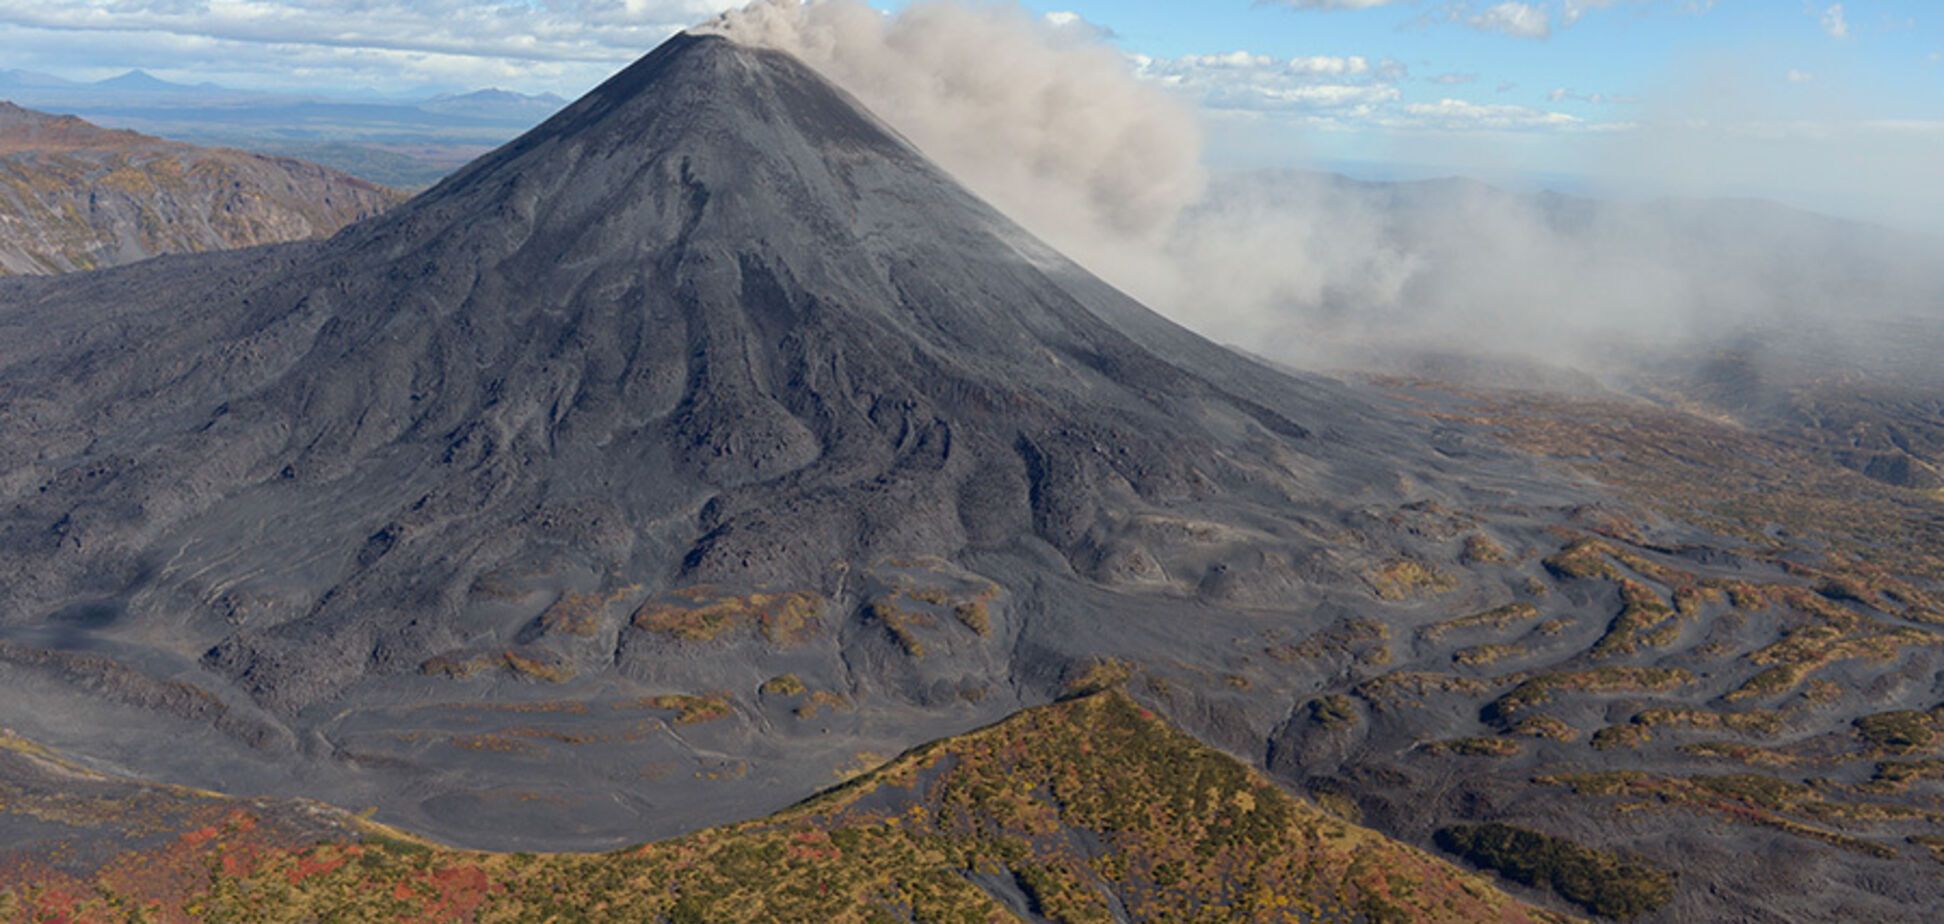 Извергается 23 года: в России еще один вулкан выбросил километры пепла